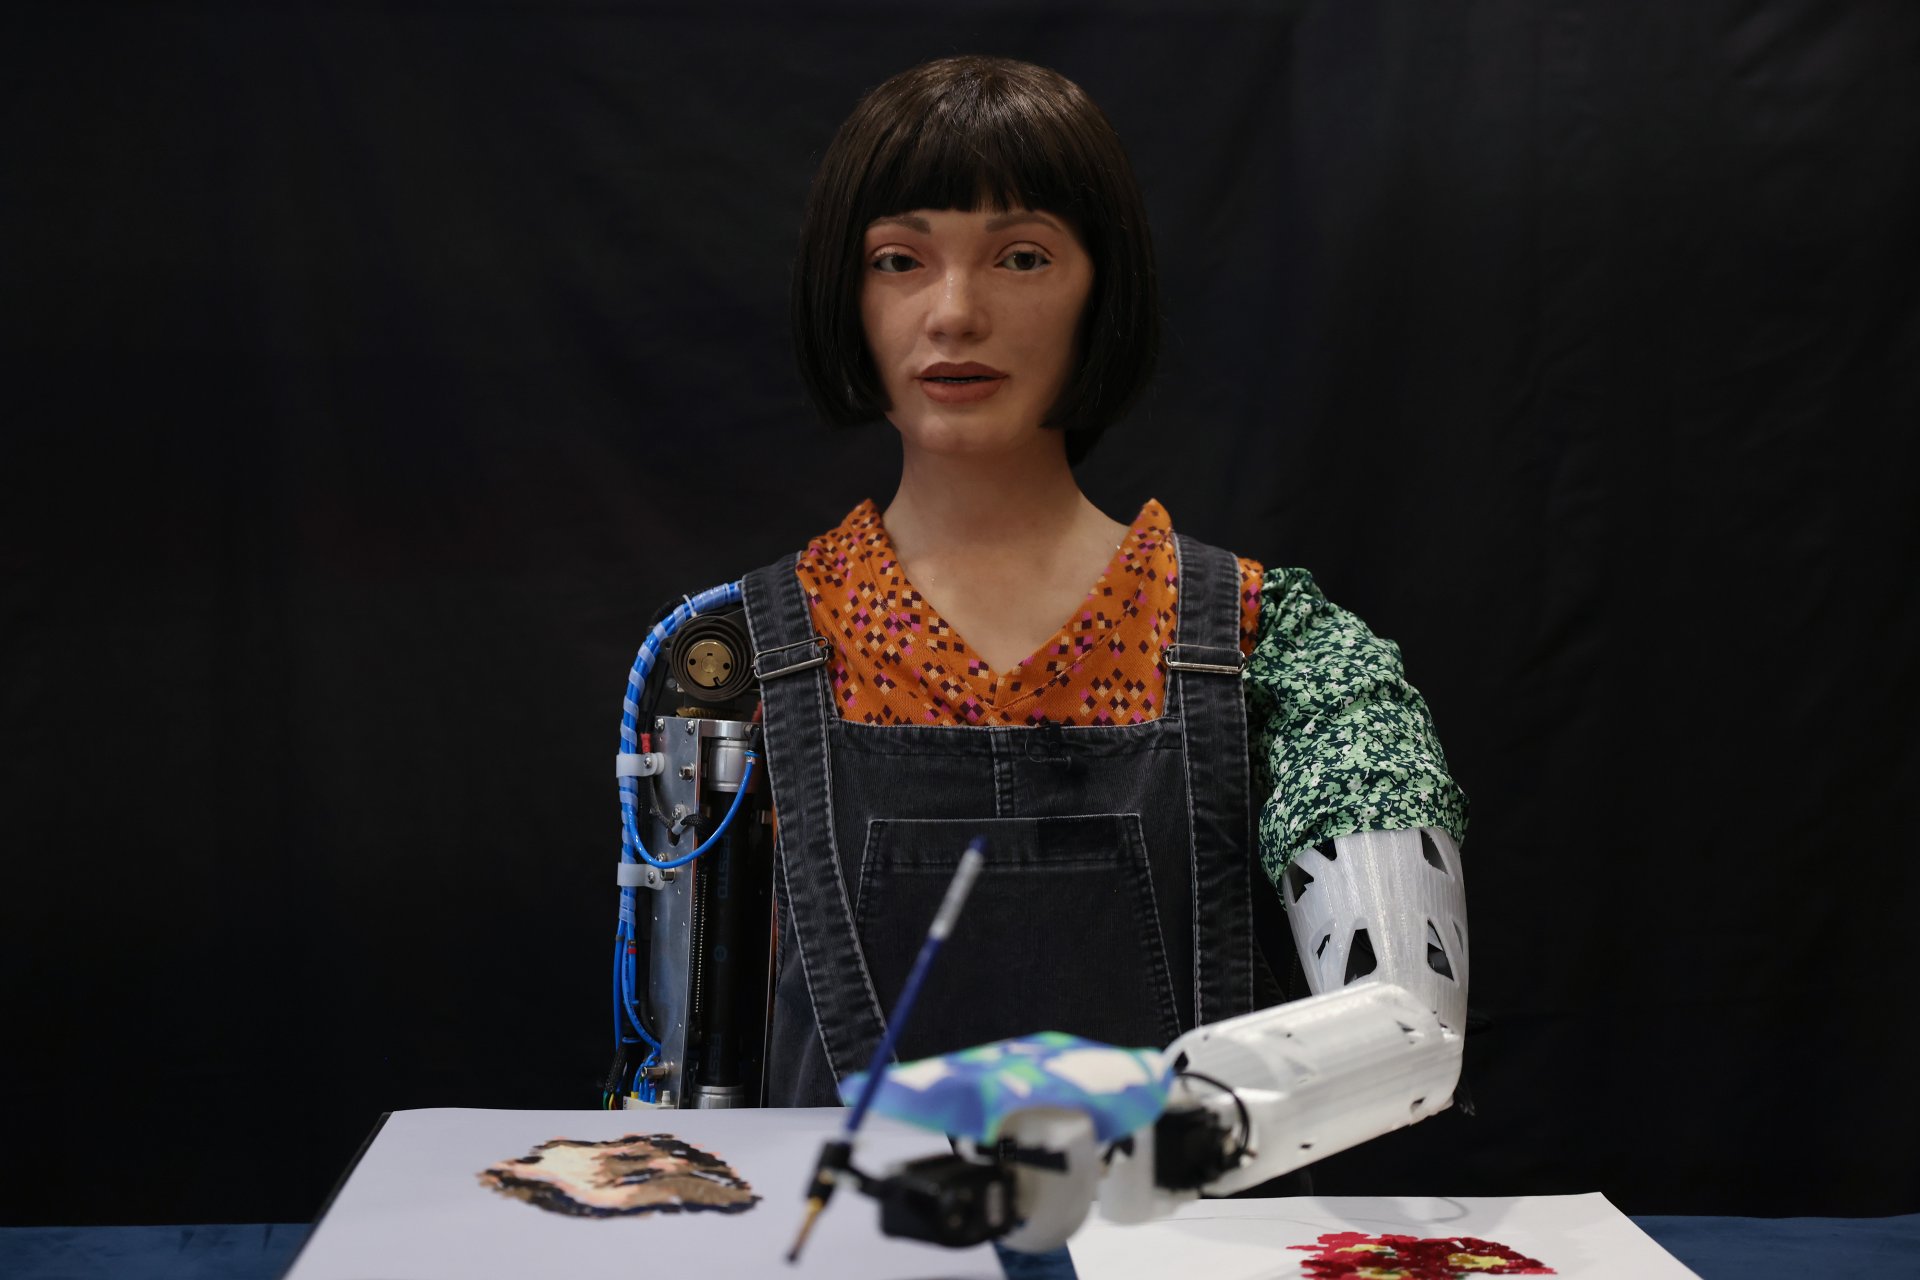 Ai-Da Robot, ултрареалистичен хуманоиден робот, рисува по време на пресконференция в Британската библиотека на 4 април 2022 г. в Лондон, Англия.